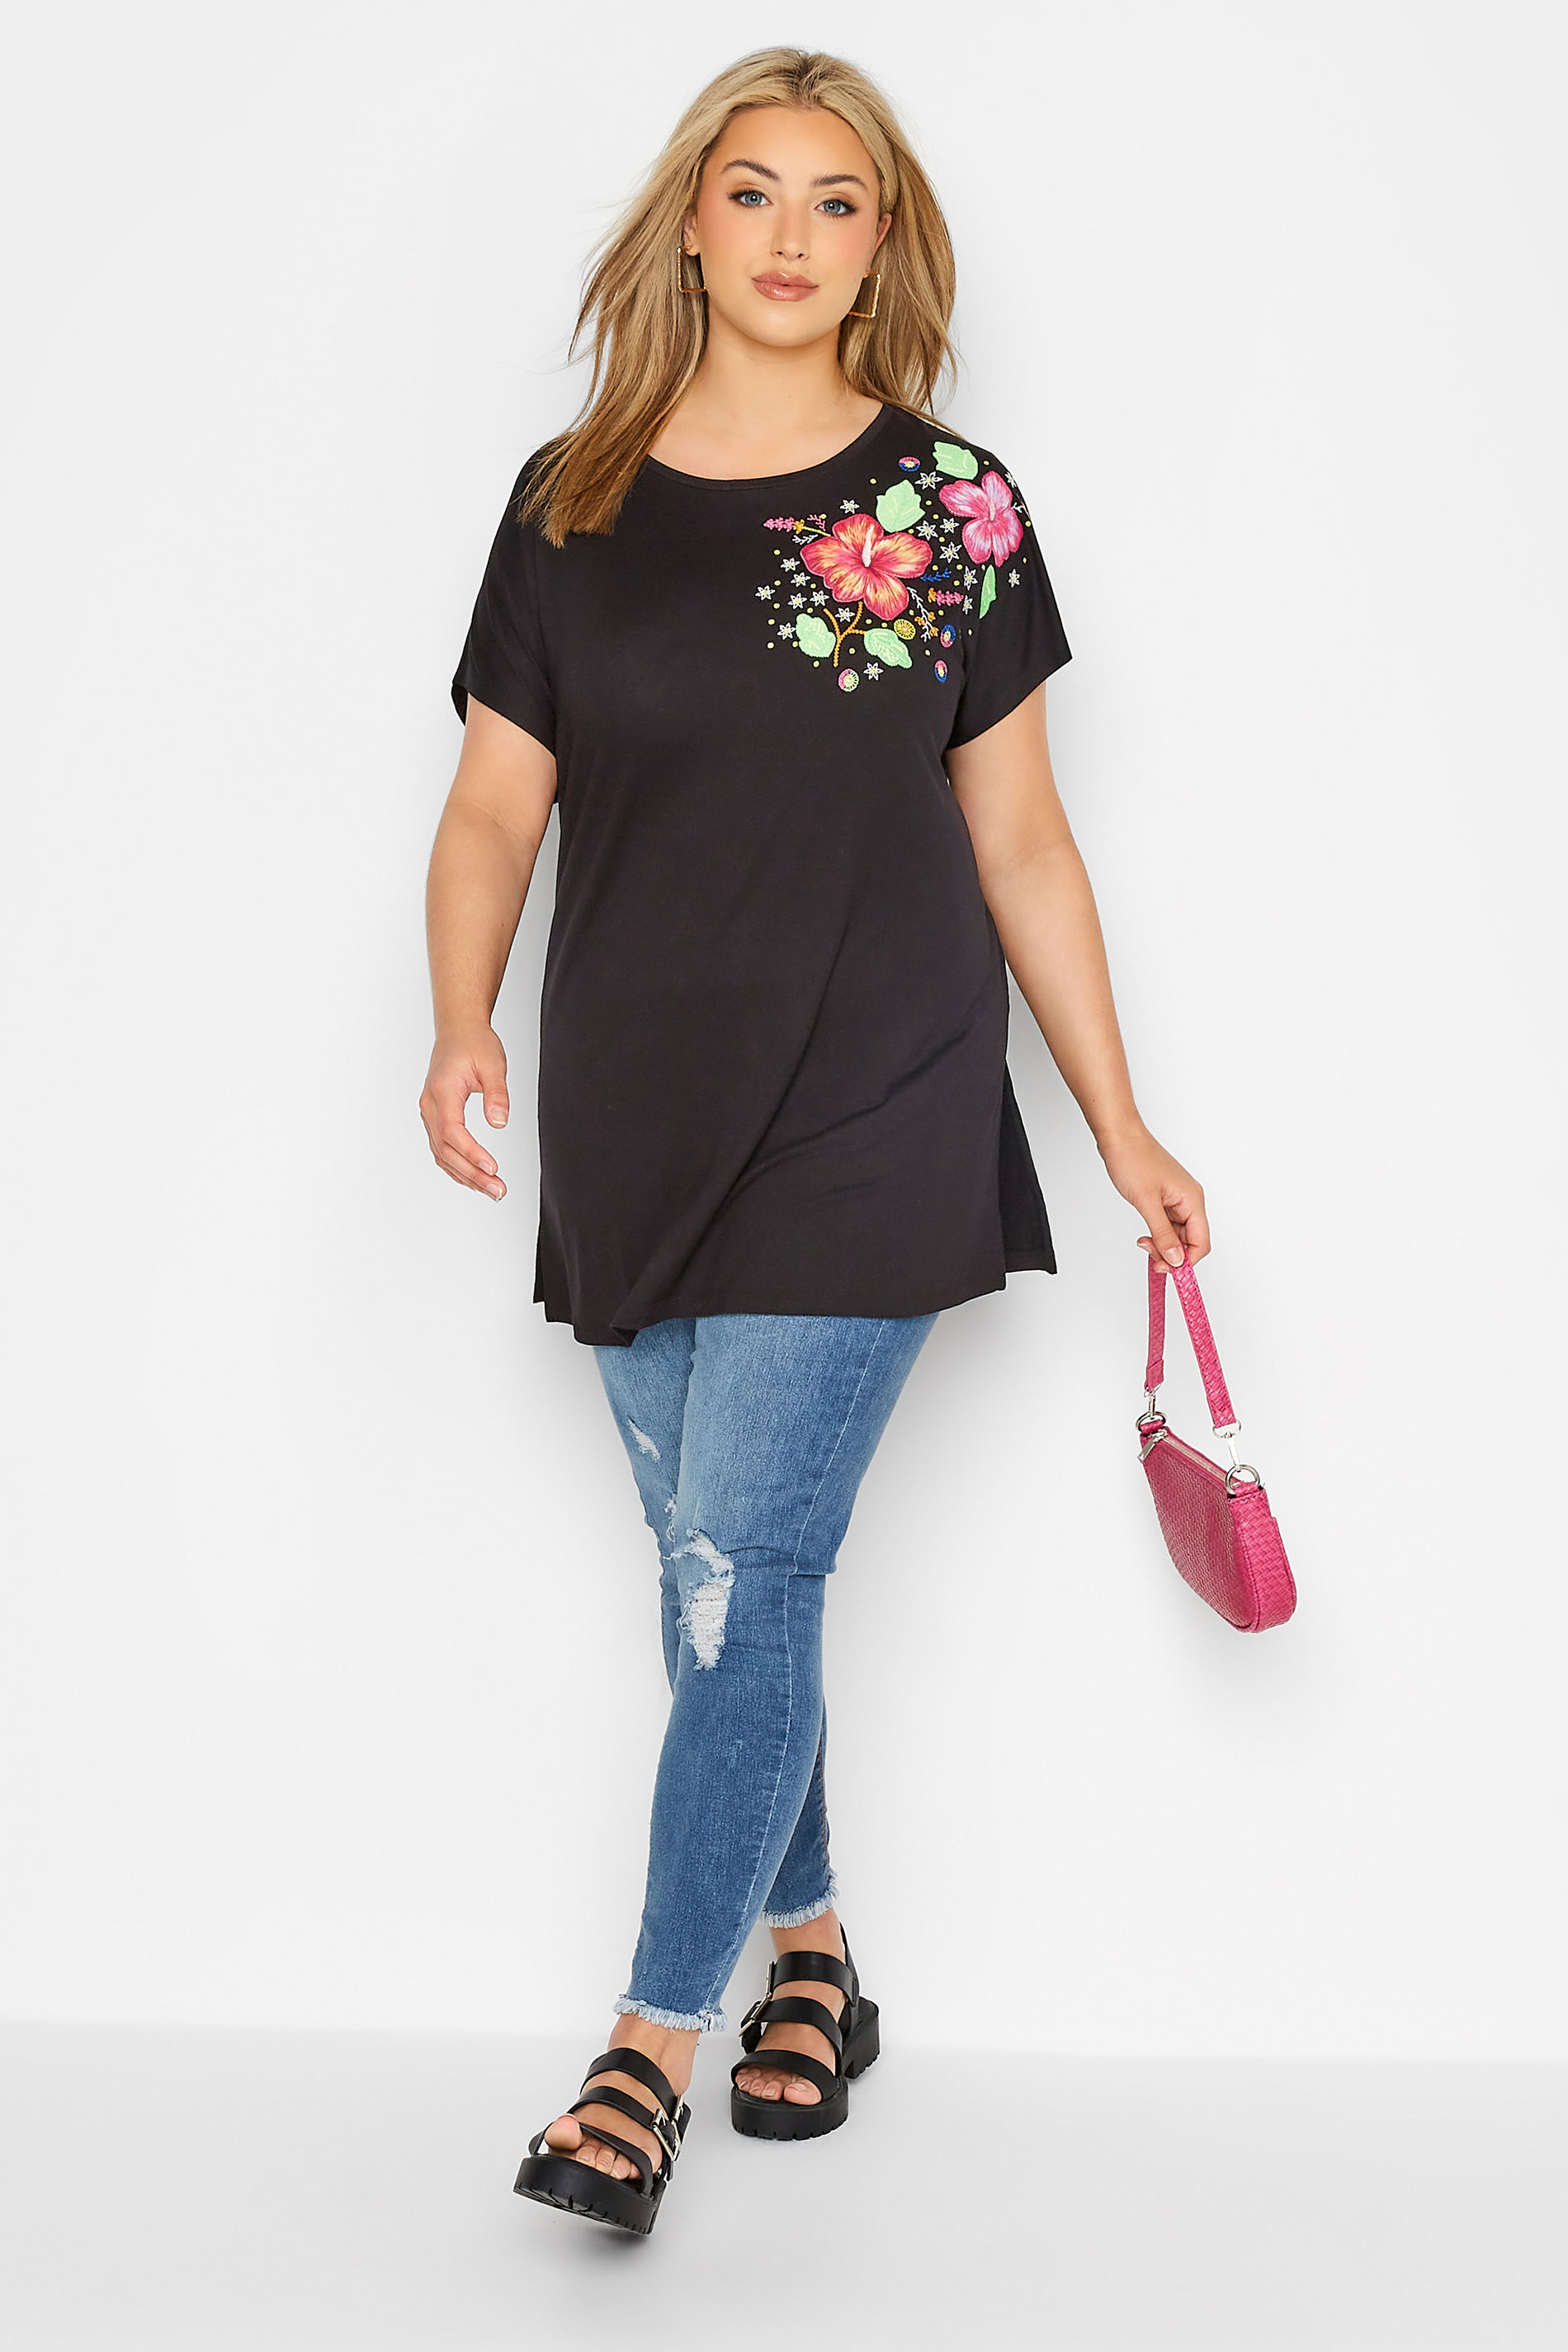 Grande taille  Tops Grande taille  T-Shirts | T-Shirt Noir Manches Courtes en Floral - HB00752